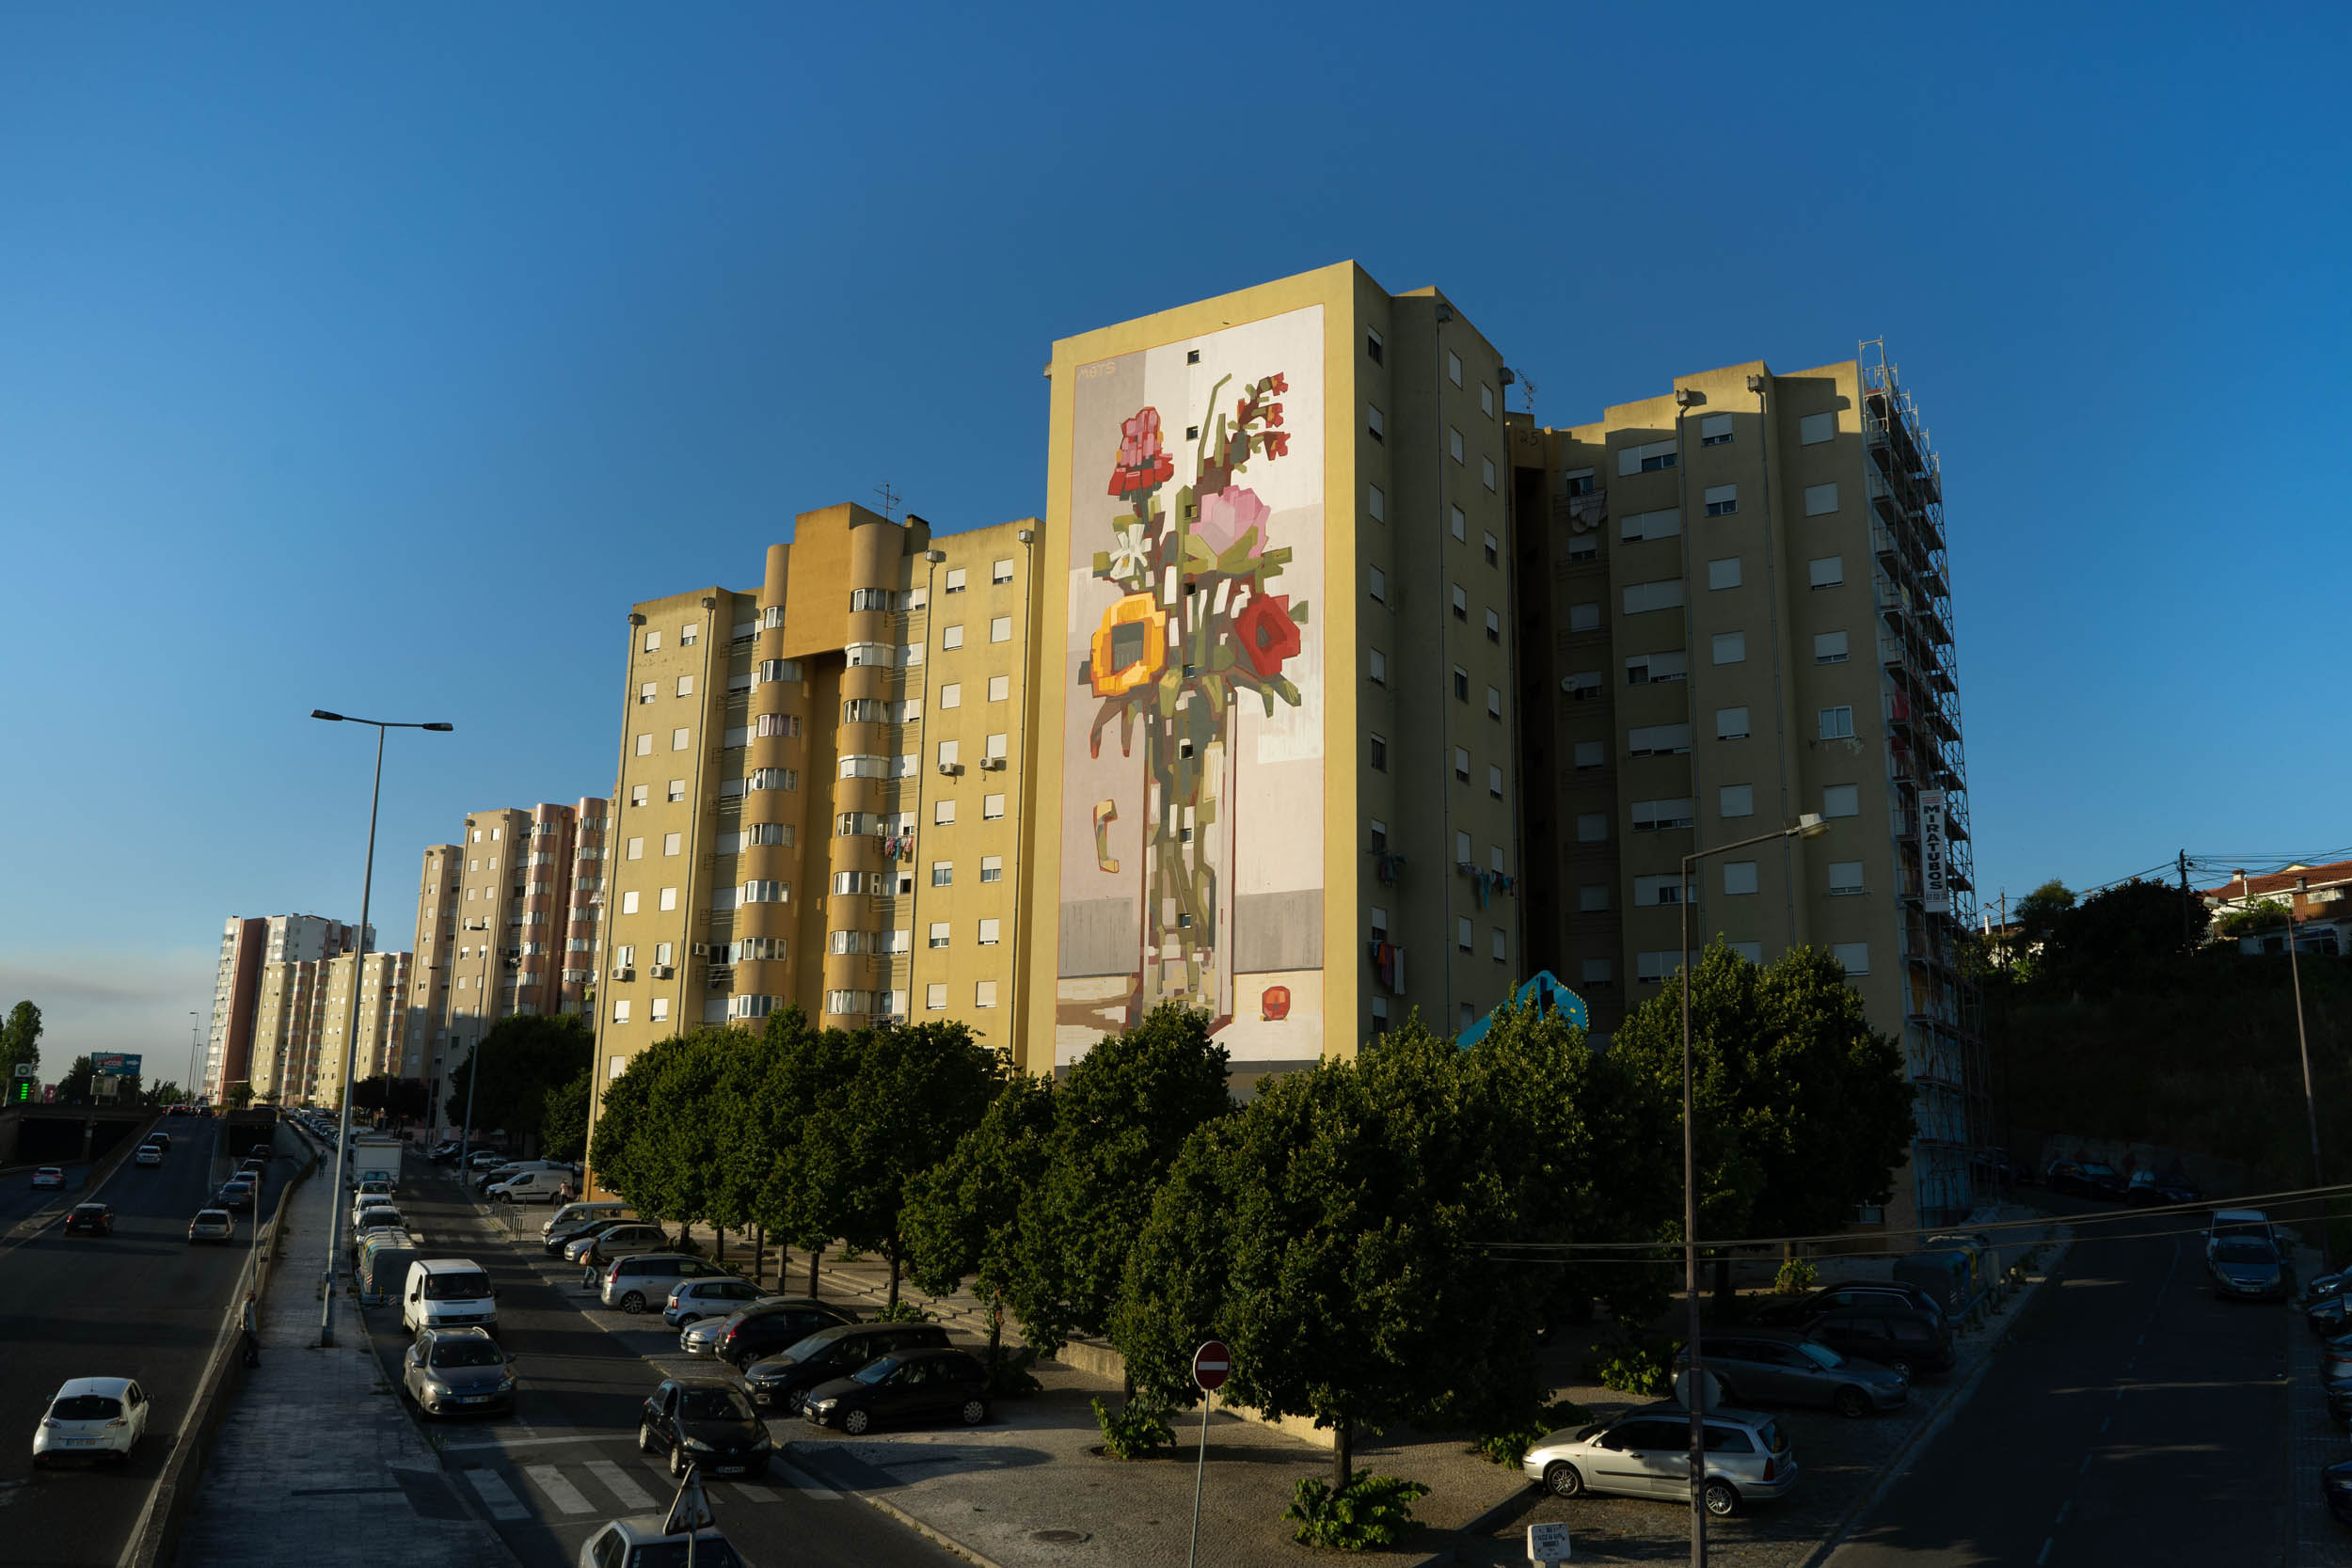 MOTS stworzył mural w Lizbonie